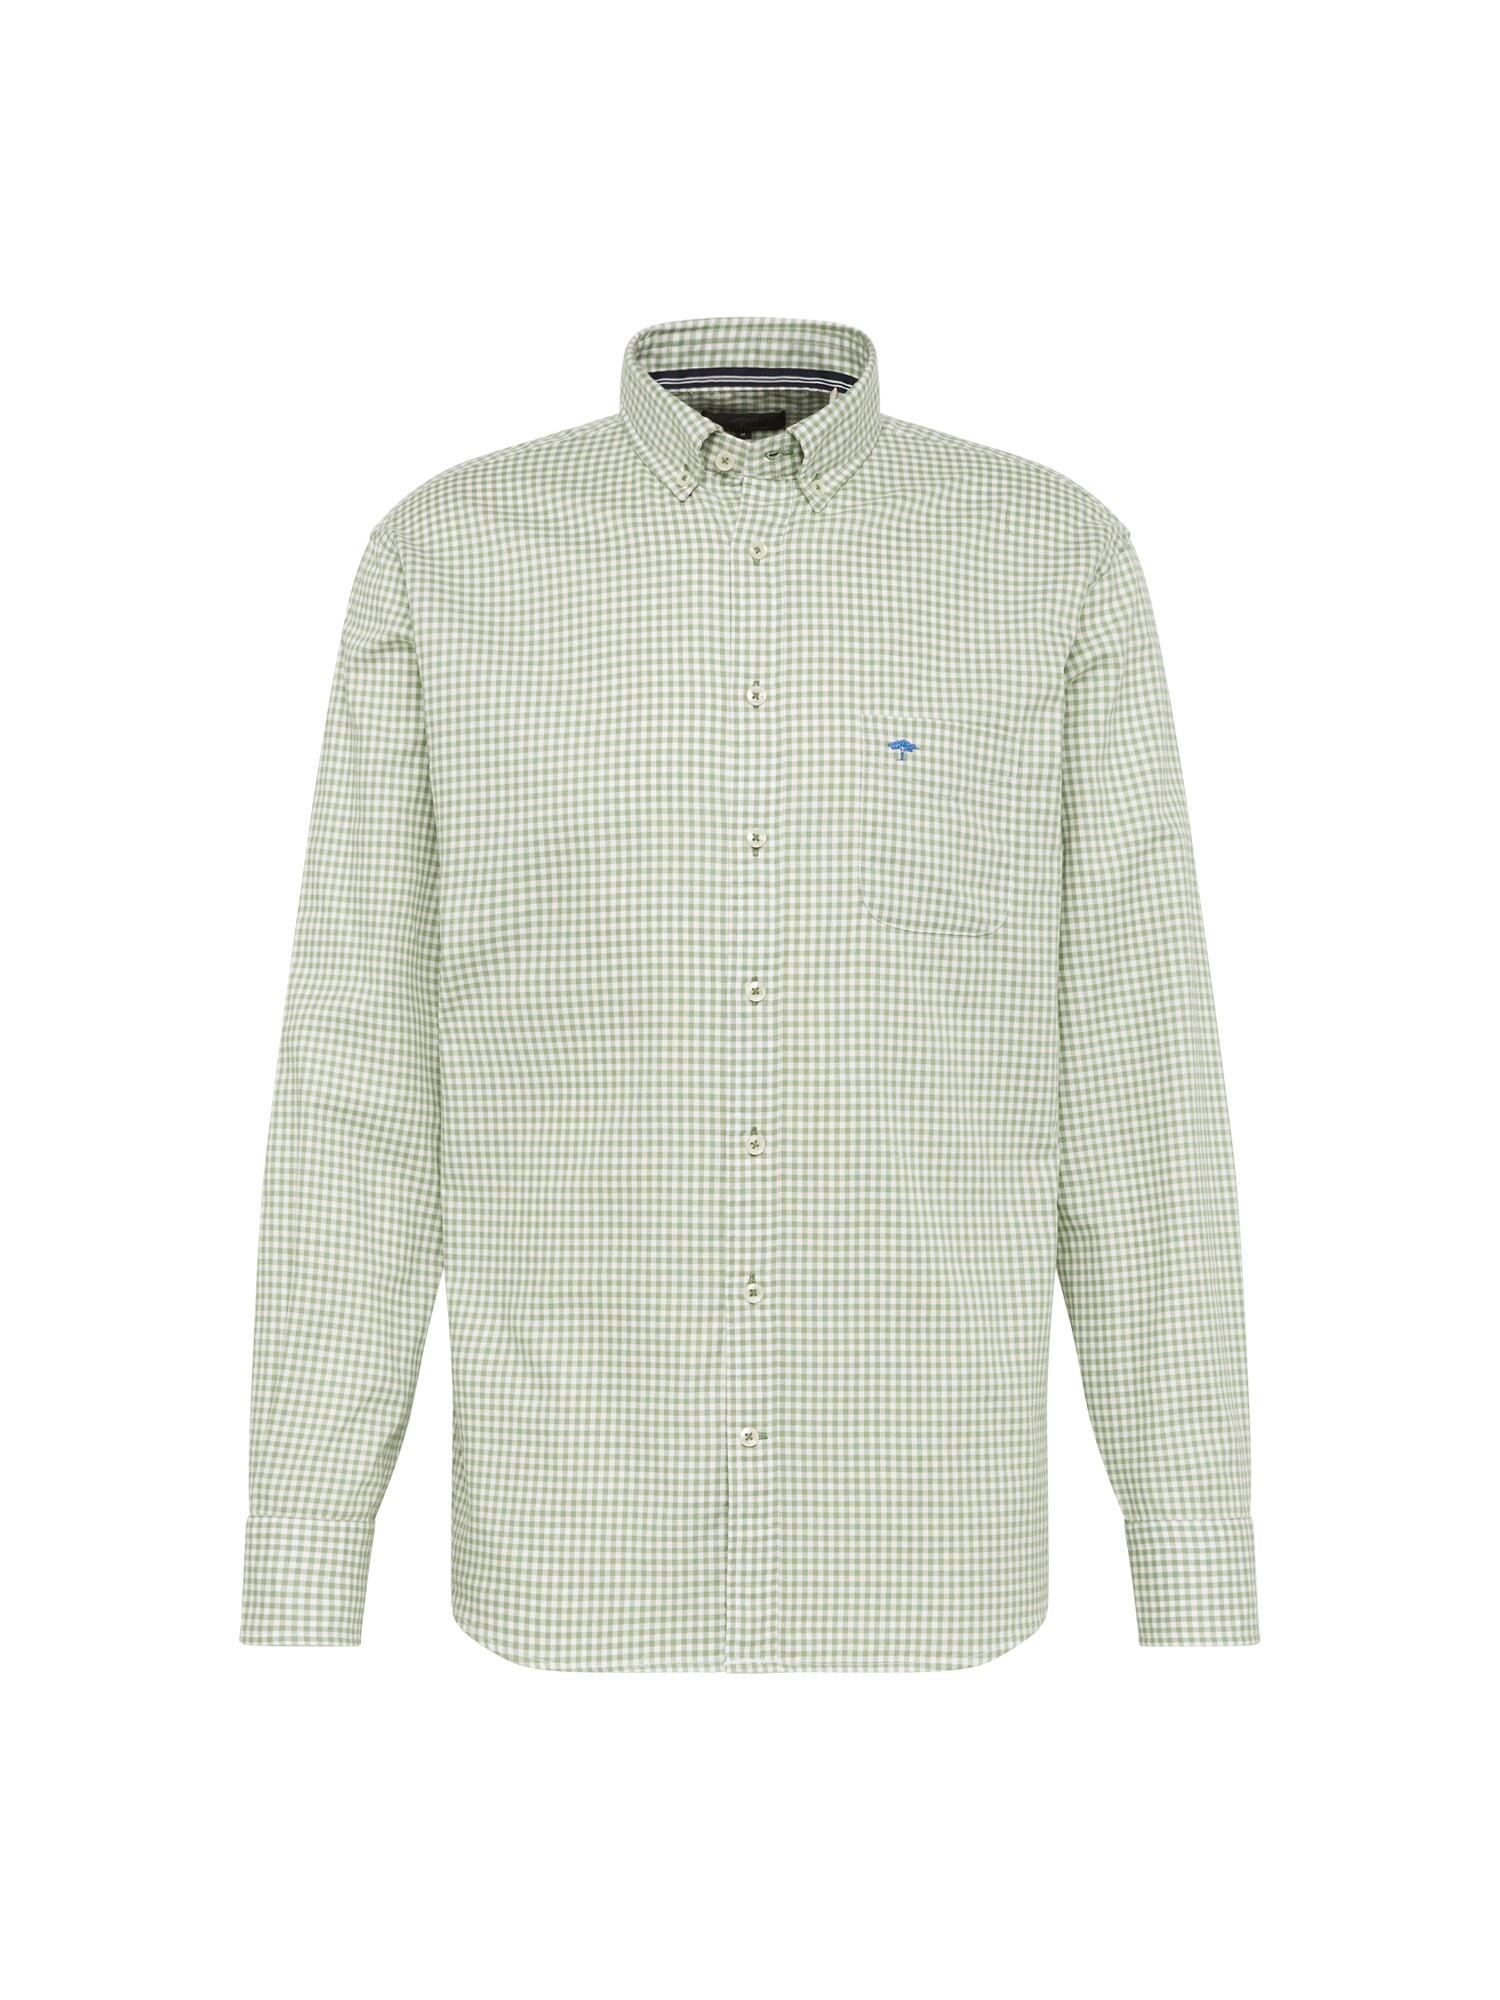 FYNCH-HATTON Marškiniai mėlyna / pastelinė žalia / balta